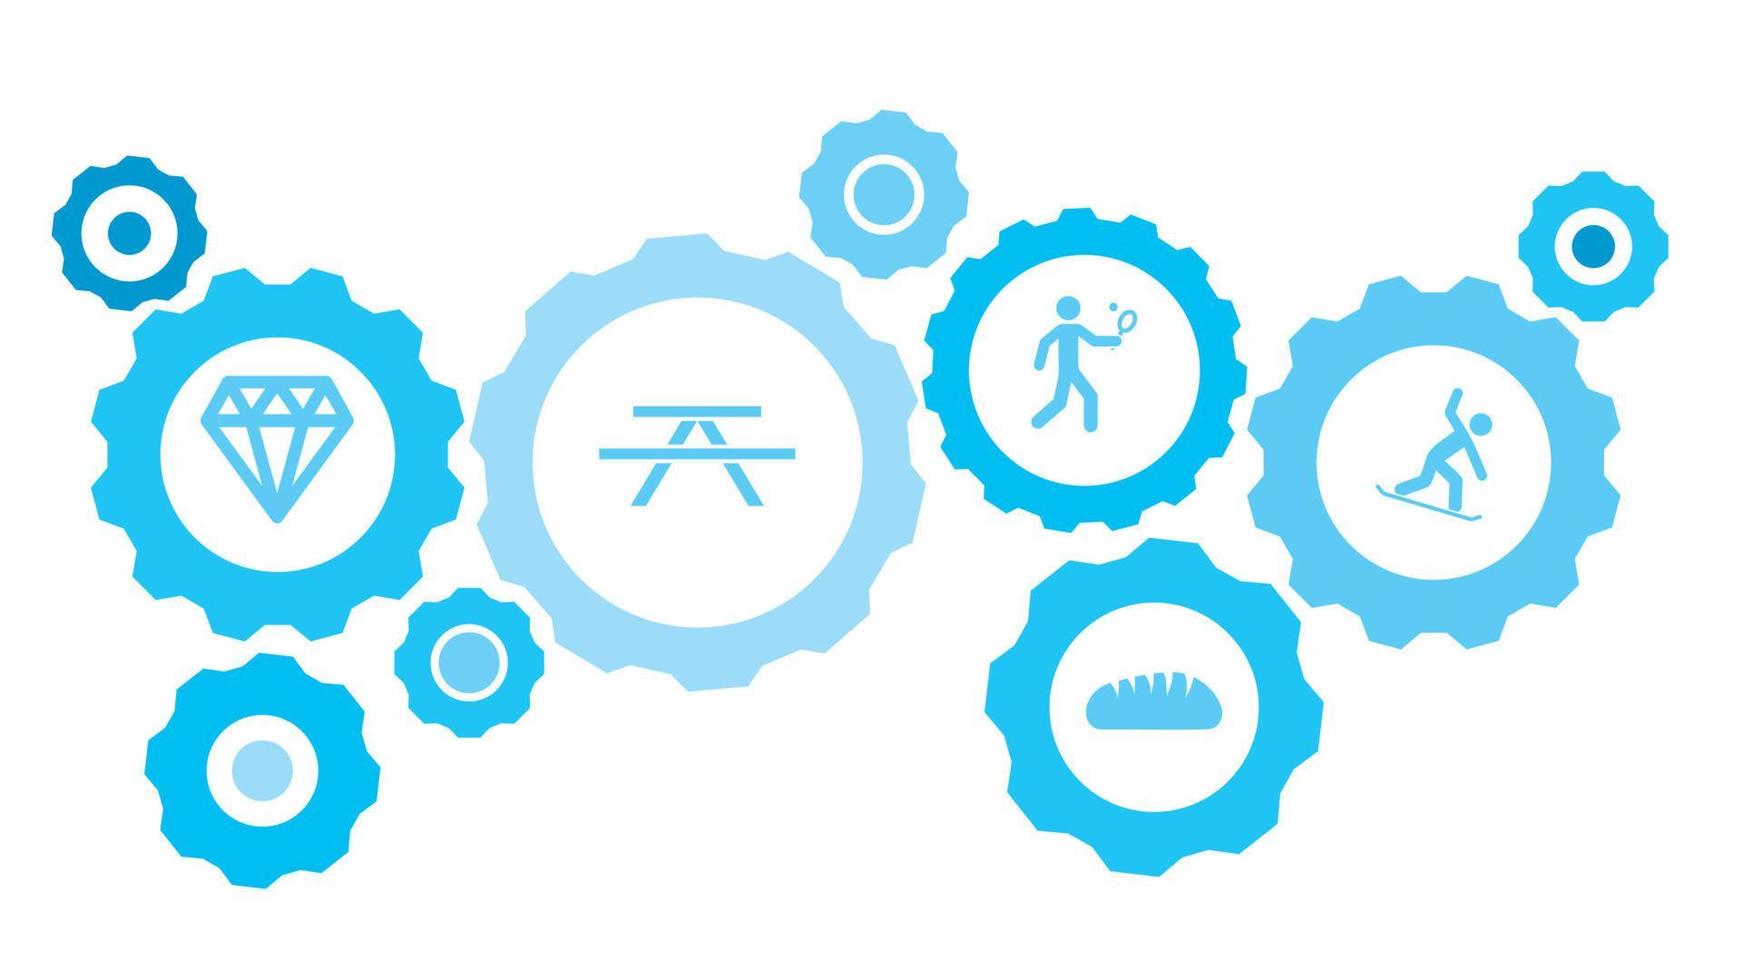 Snowboard Ausrüstung Blau Symbol Satz. abstrakt Hintergrund mit in Verbindung gebracht Getriebe und Symbole zum Logistik, Service, Versand, Verteilung, Transport, Markt, kommunizieren Konzepte vektor